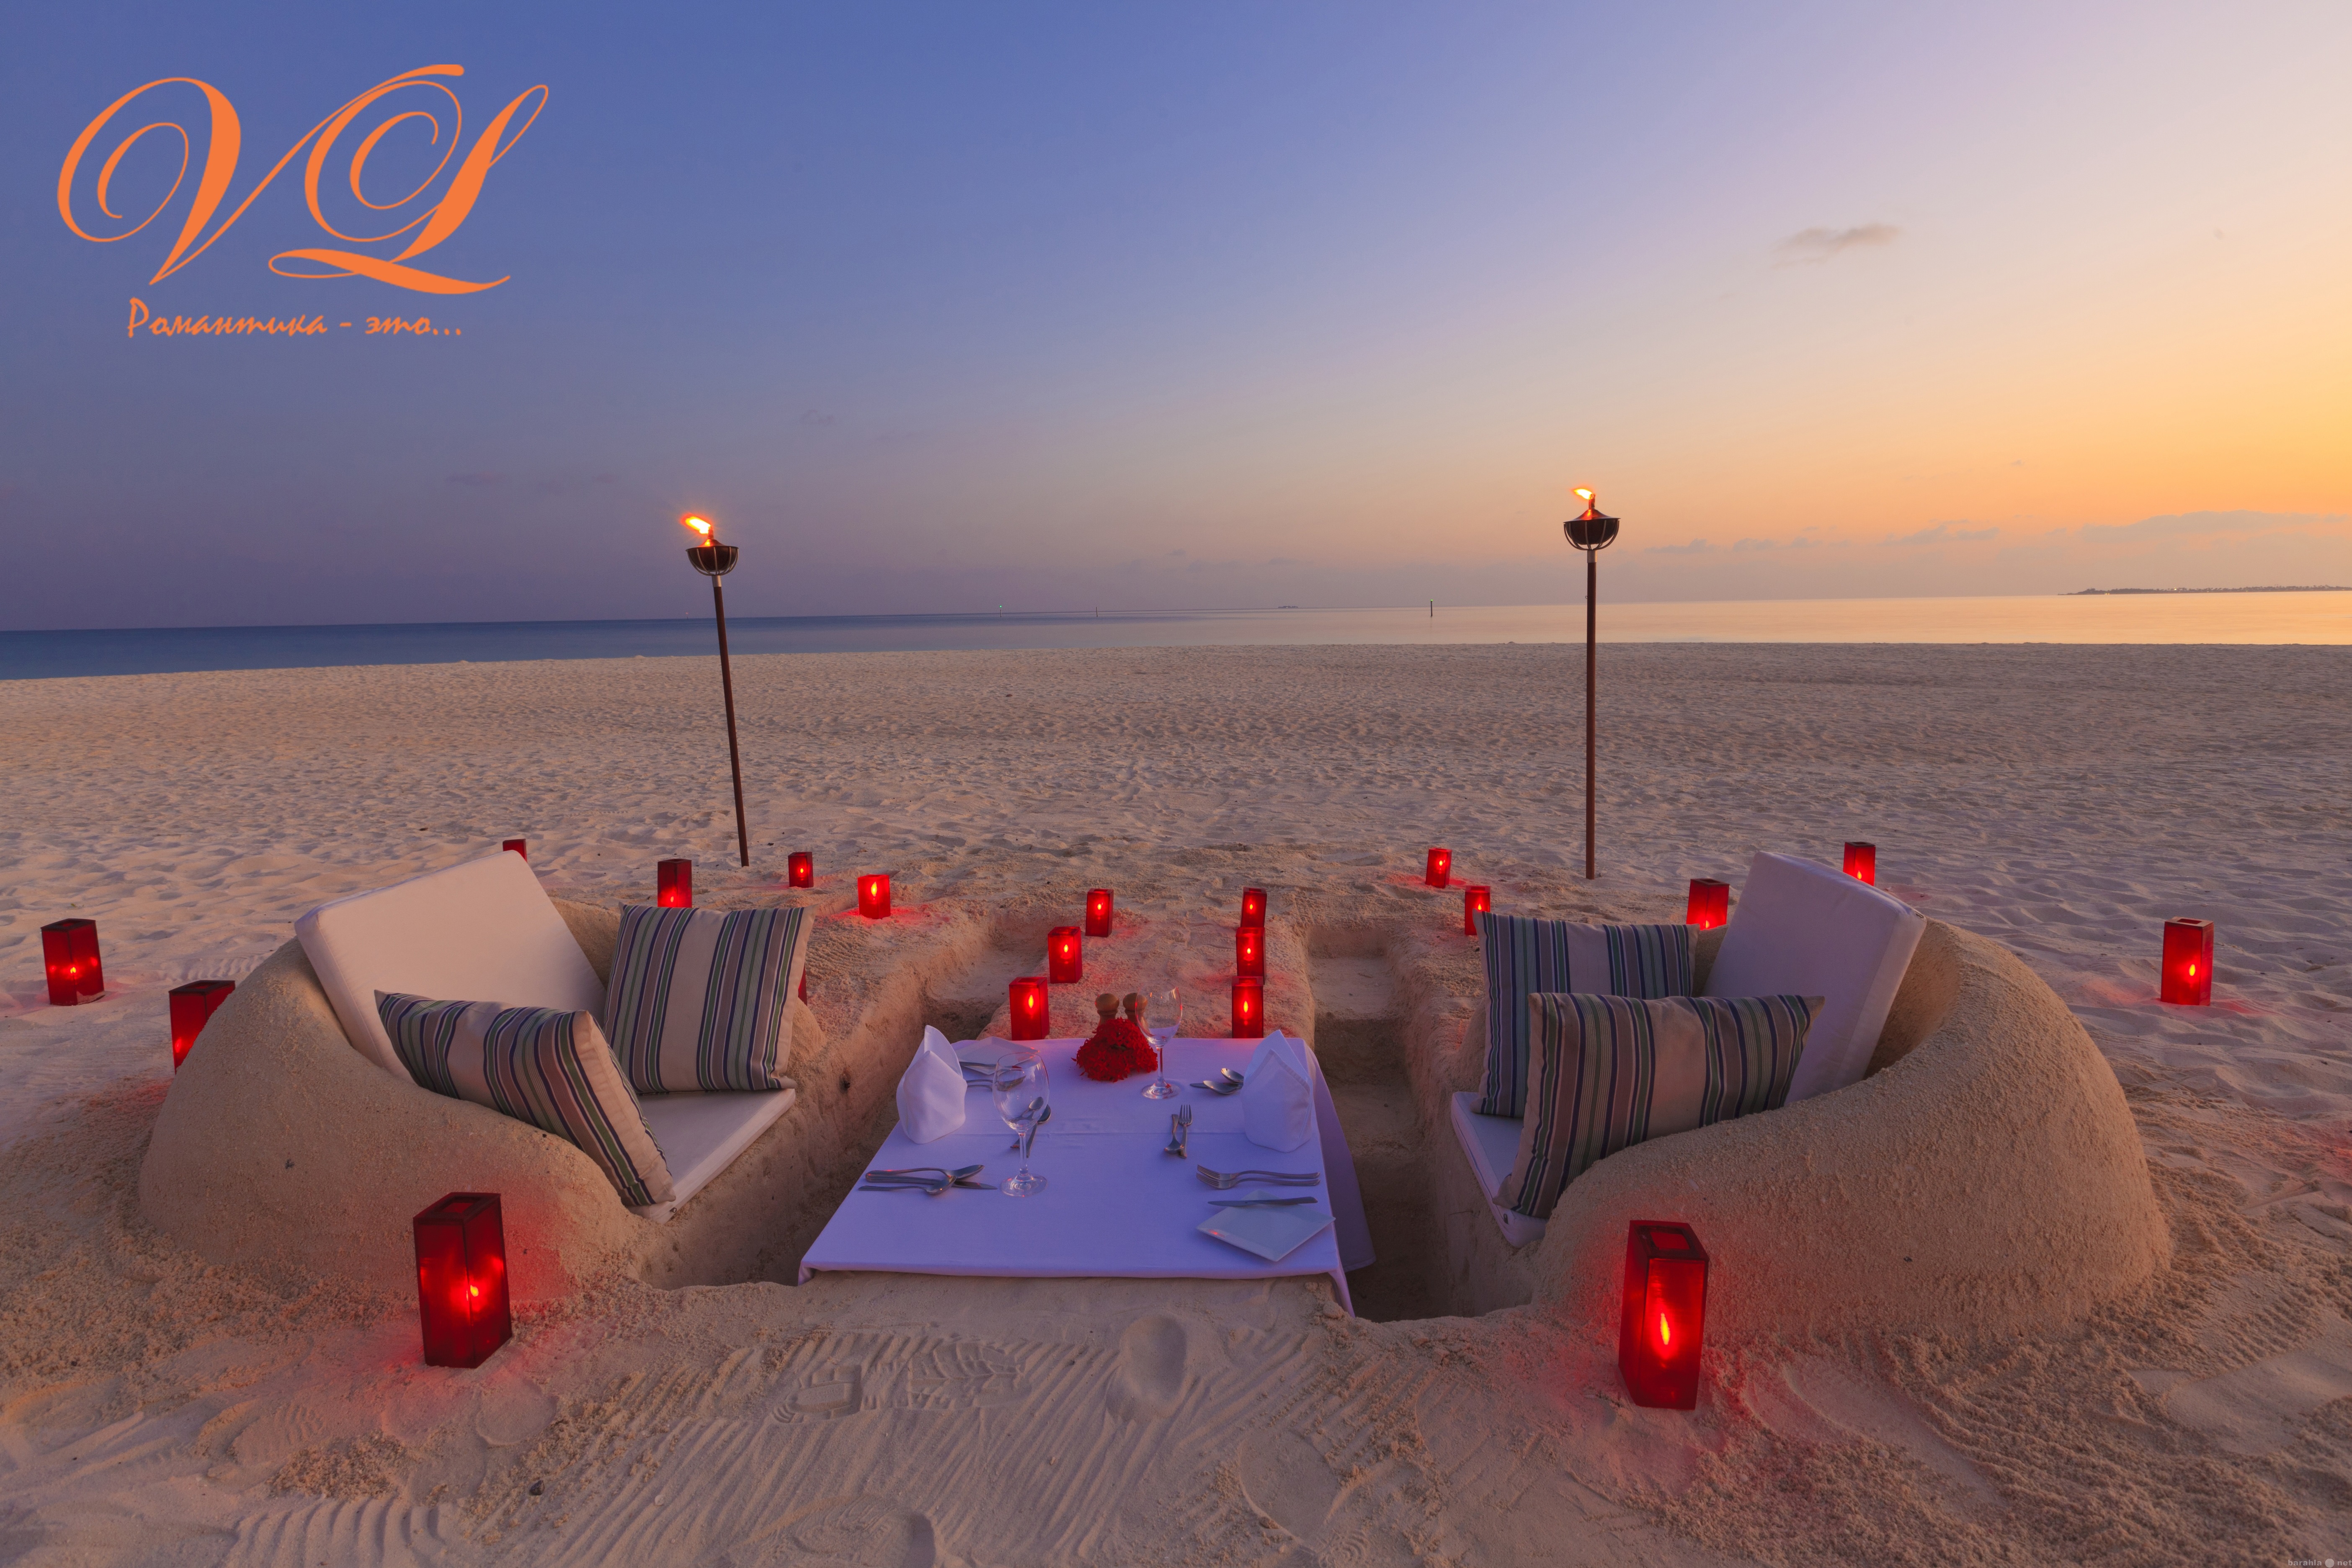 Самый большой романтик. Красивые романтические места. Романтичное место. Романтик на пляже. Романтический вечер.